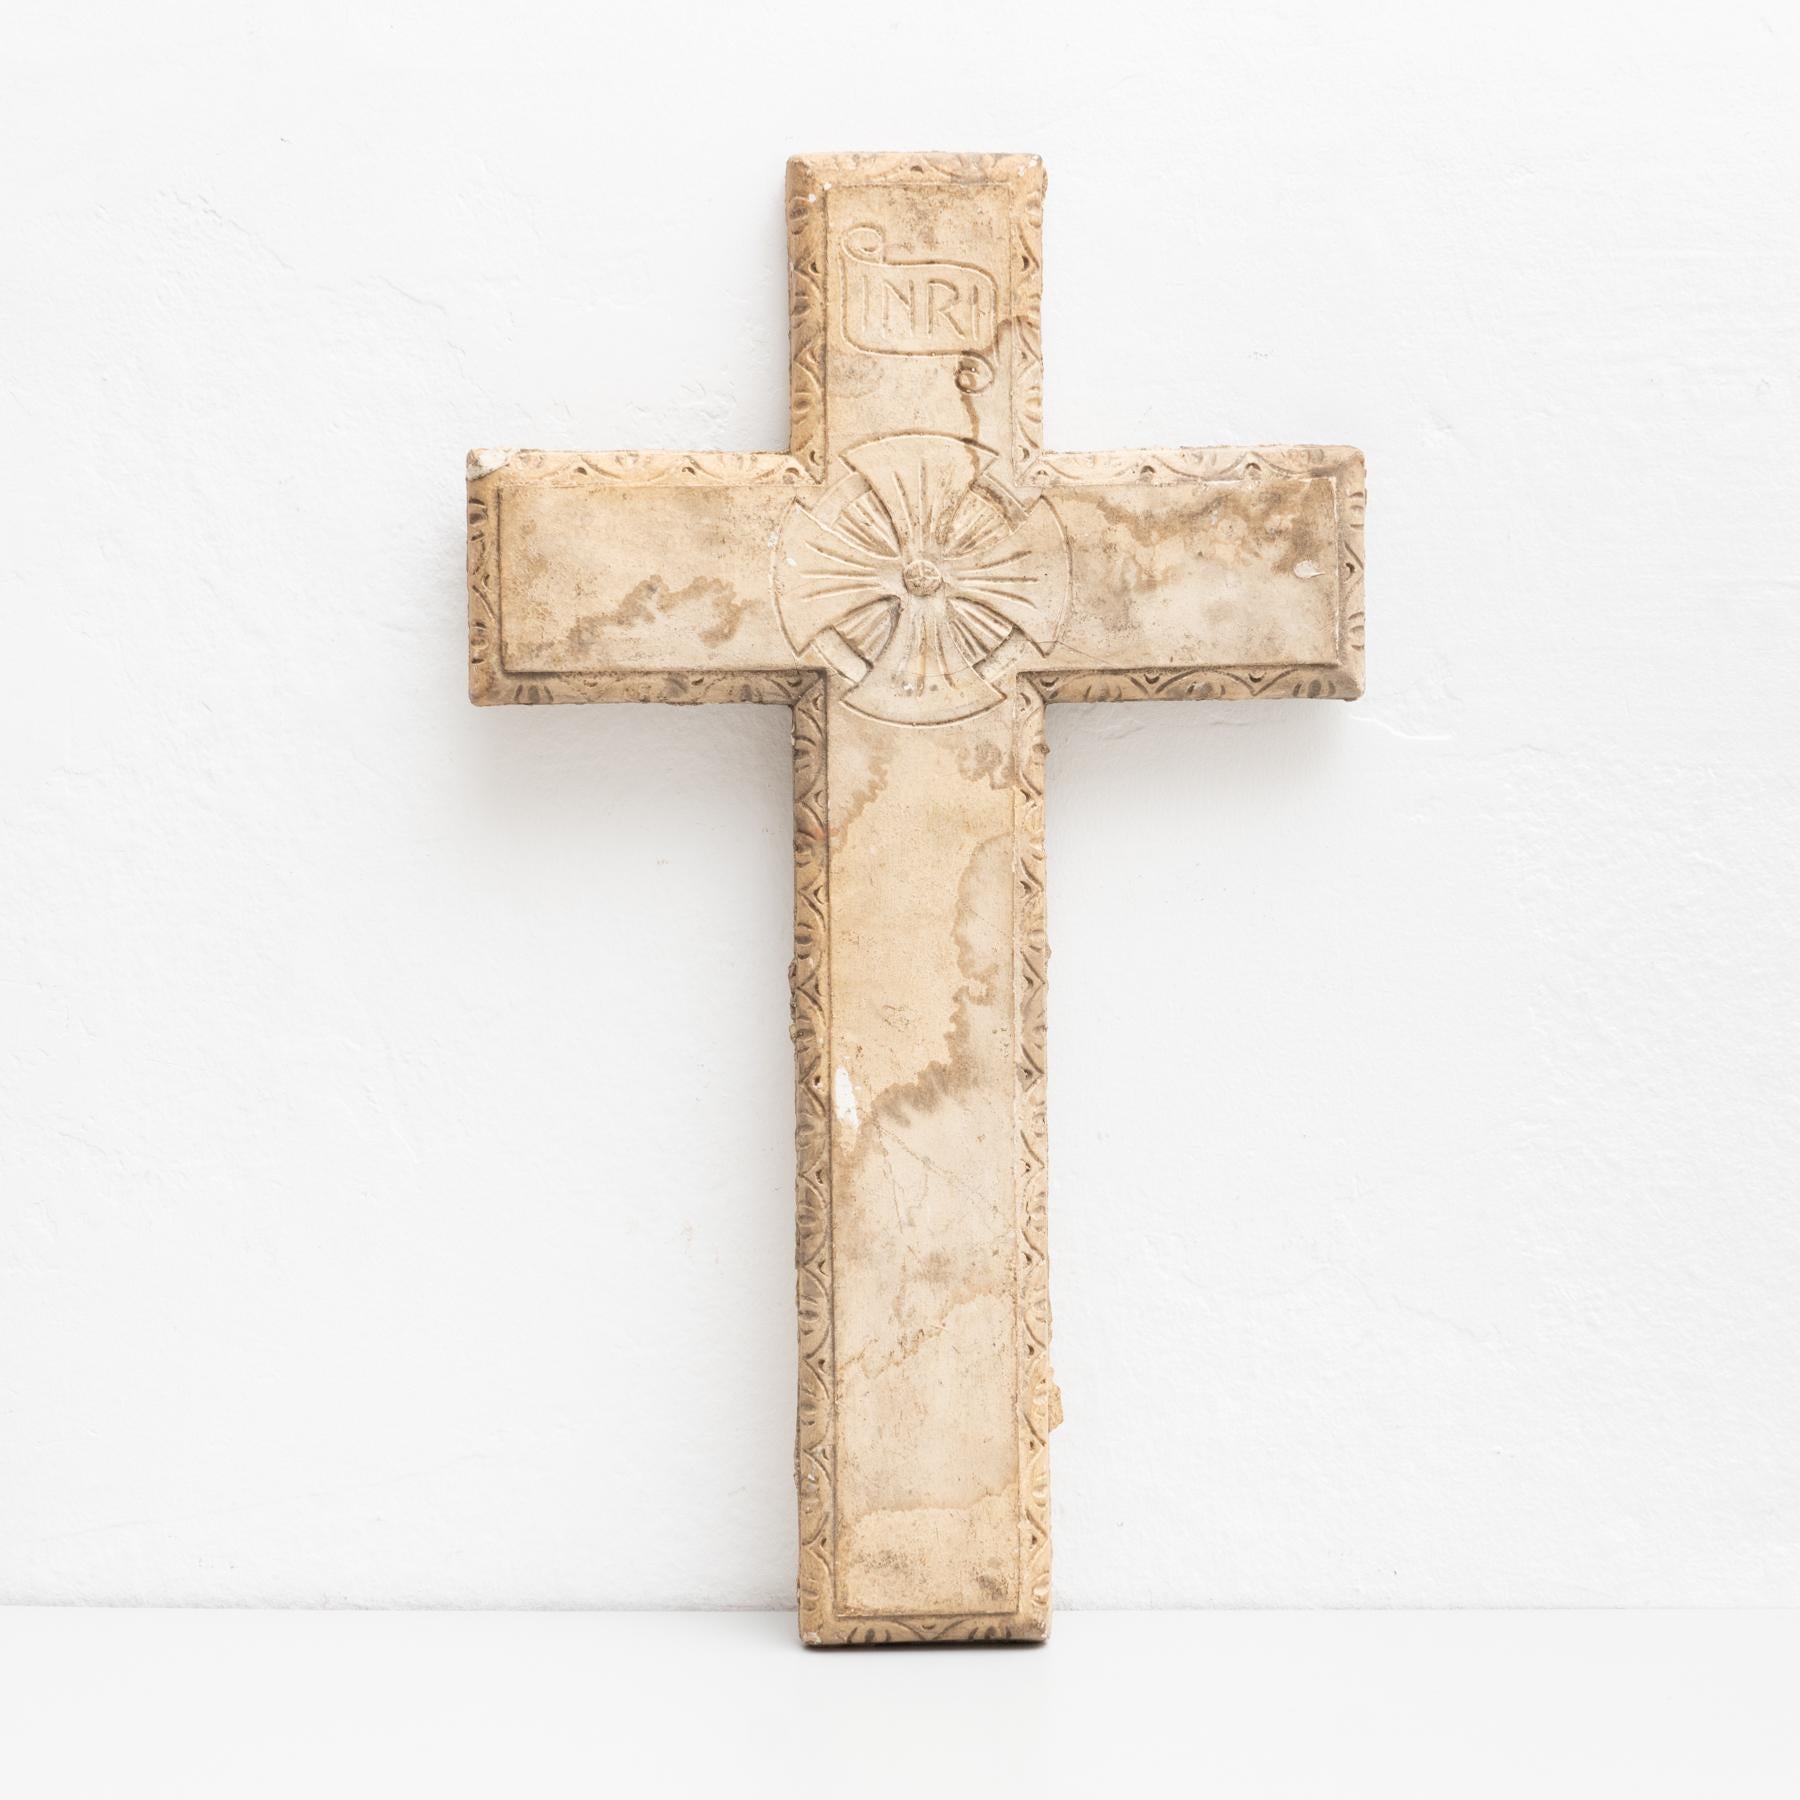 Traditionelles religiöses Wandbild aus Gips, das ein Kreuz darstellt.

Hergestellt in einem traditionellen katalanischen Atelier in Olot, Spanien, um 1950.

Olot hat eine lange Tradition in der Herstellung von Skulpturen und religiösen